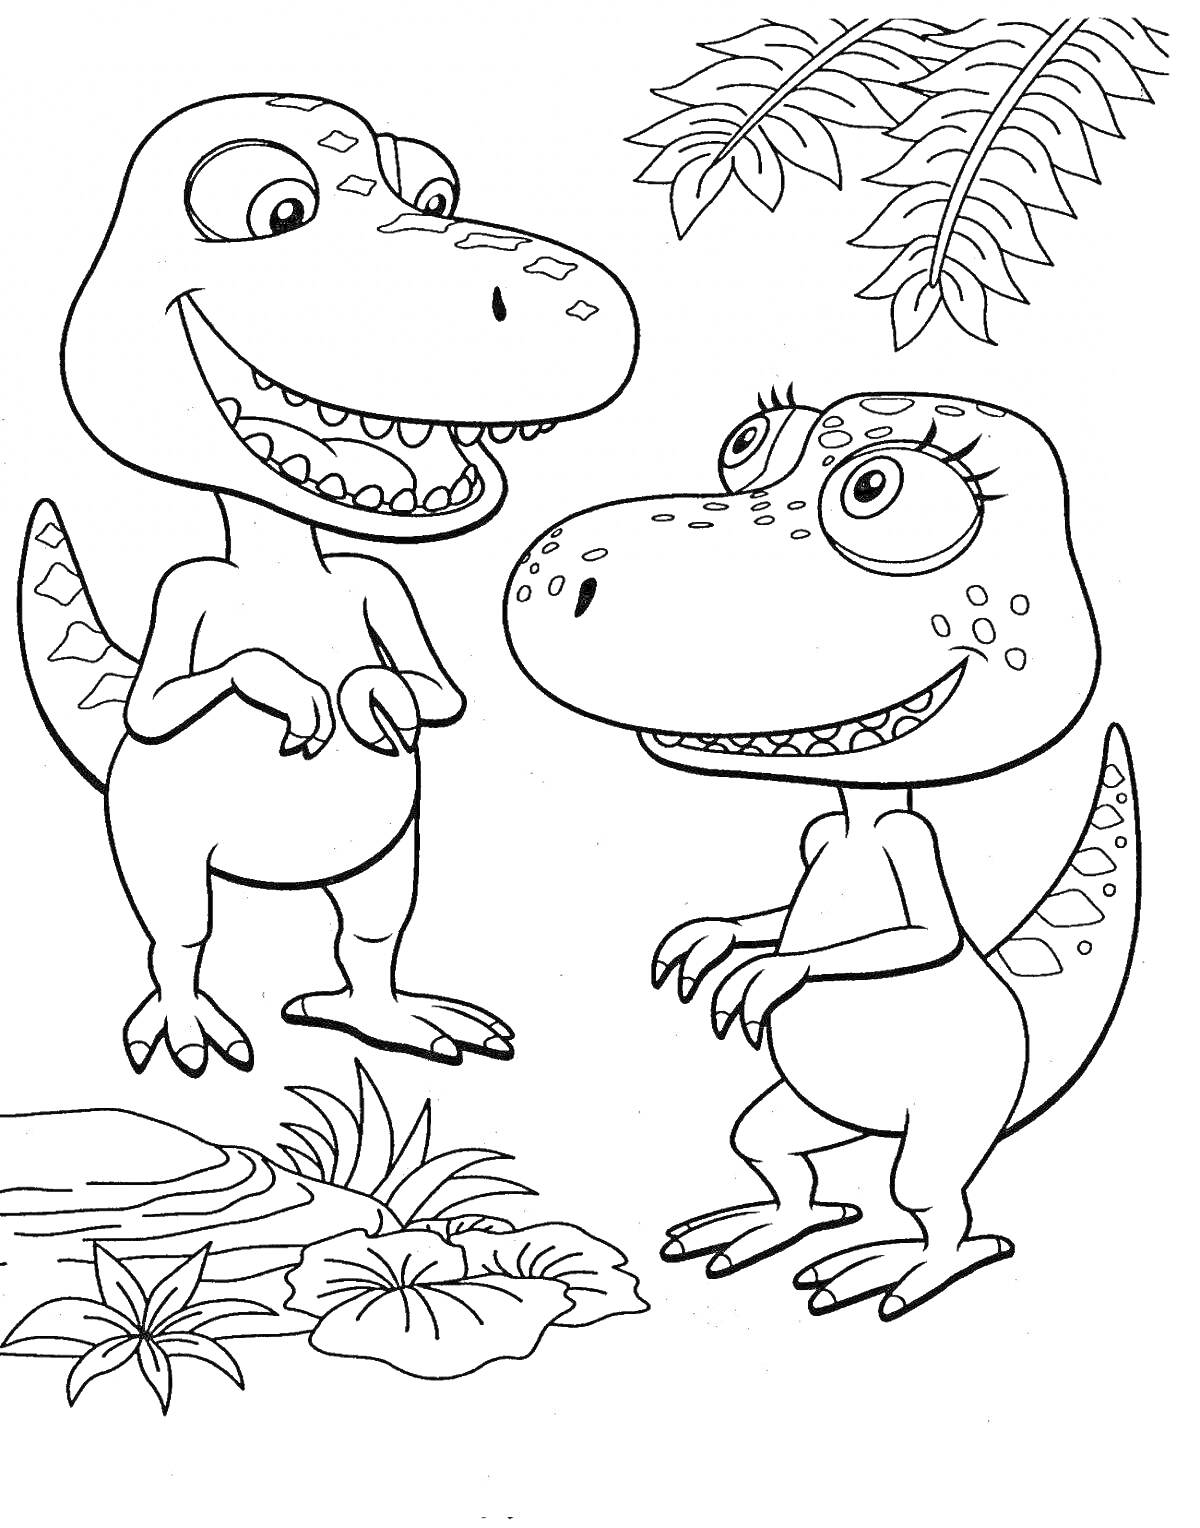 Два улыбающихся динозавра среди растений и деревьев